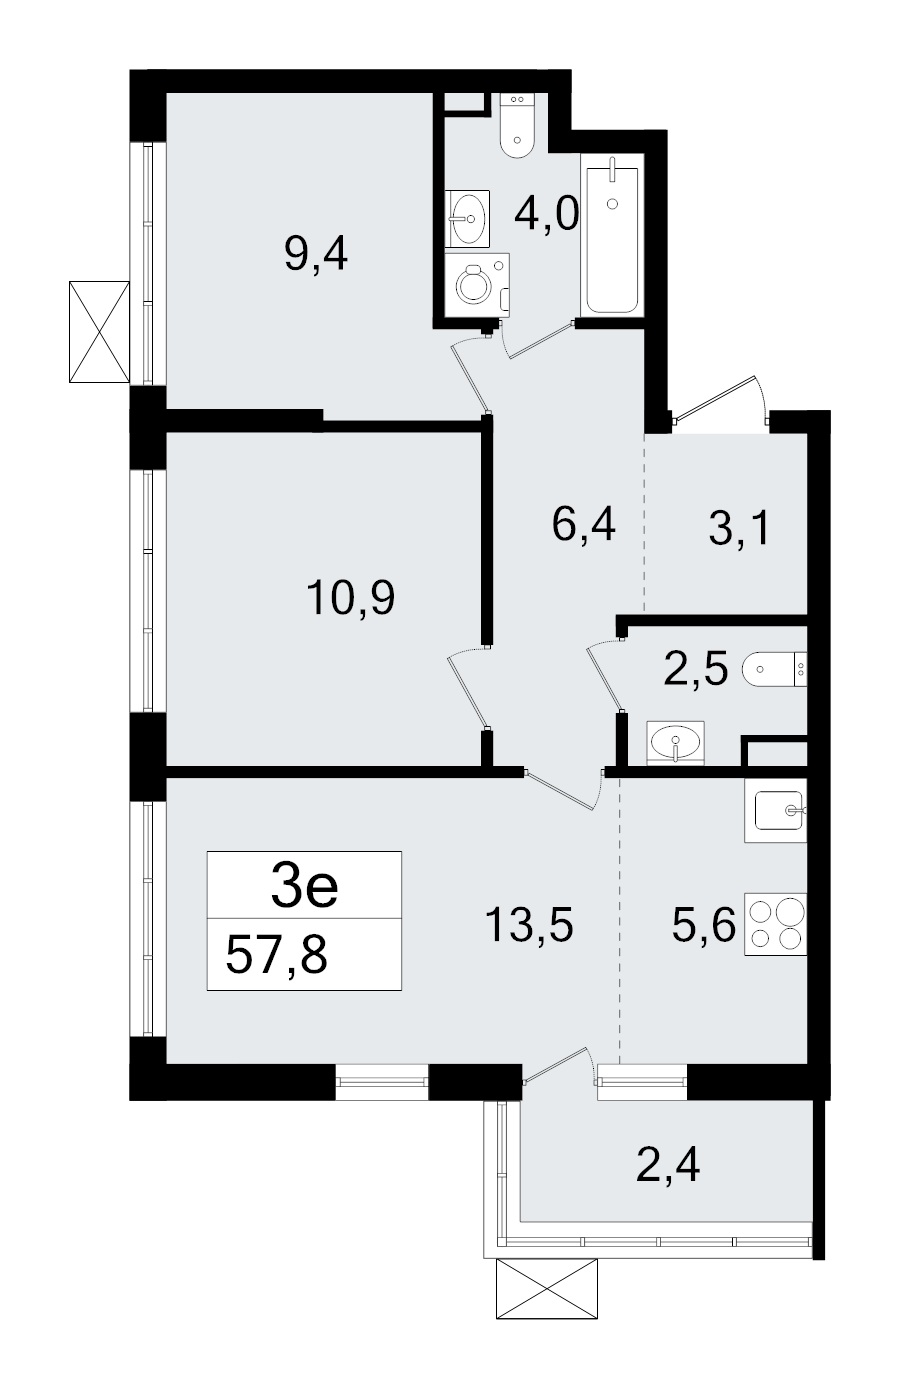 3-комнатная (Евро) квартира, 57.8 м² в ЖК "А101 Всеволожск" - планировка, фото №1